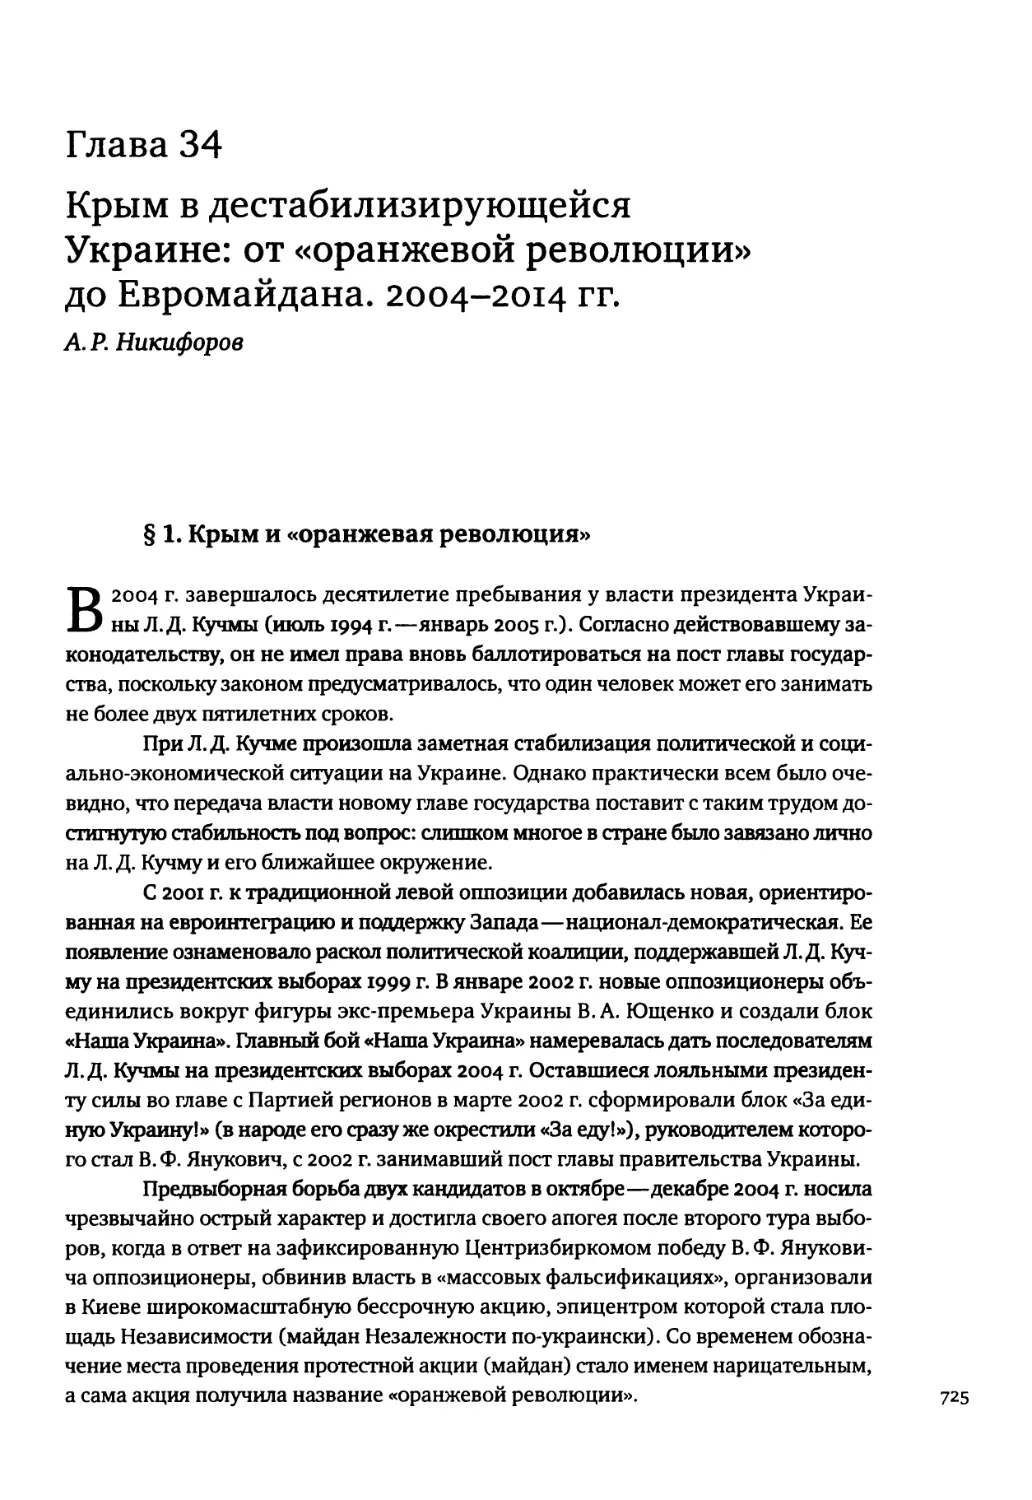 Глава 34. Крым в дестабилизирующейся Украине: от «оранжевой революции» до Евромайдана. 2004-2014 гг